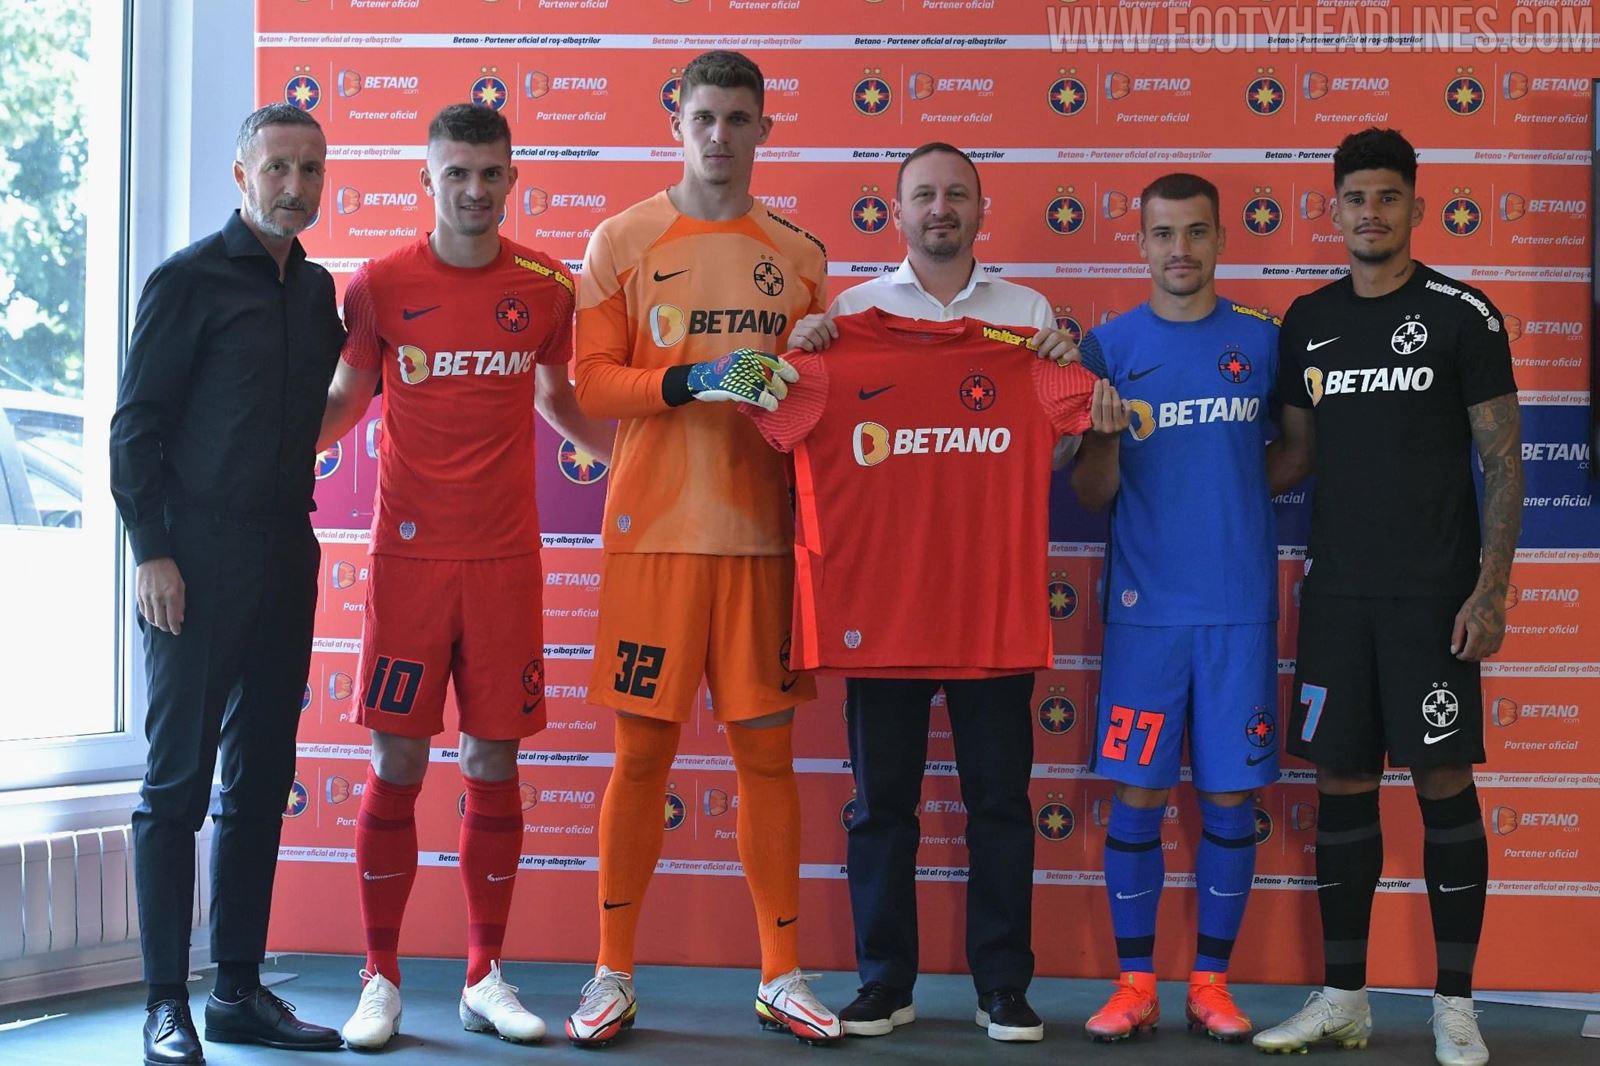 Steaua Bucharest 15-16 Kit Released - Footy Headlines